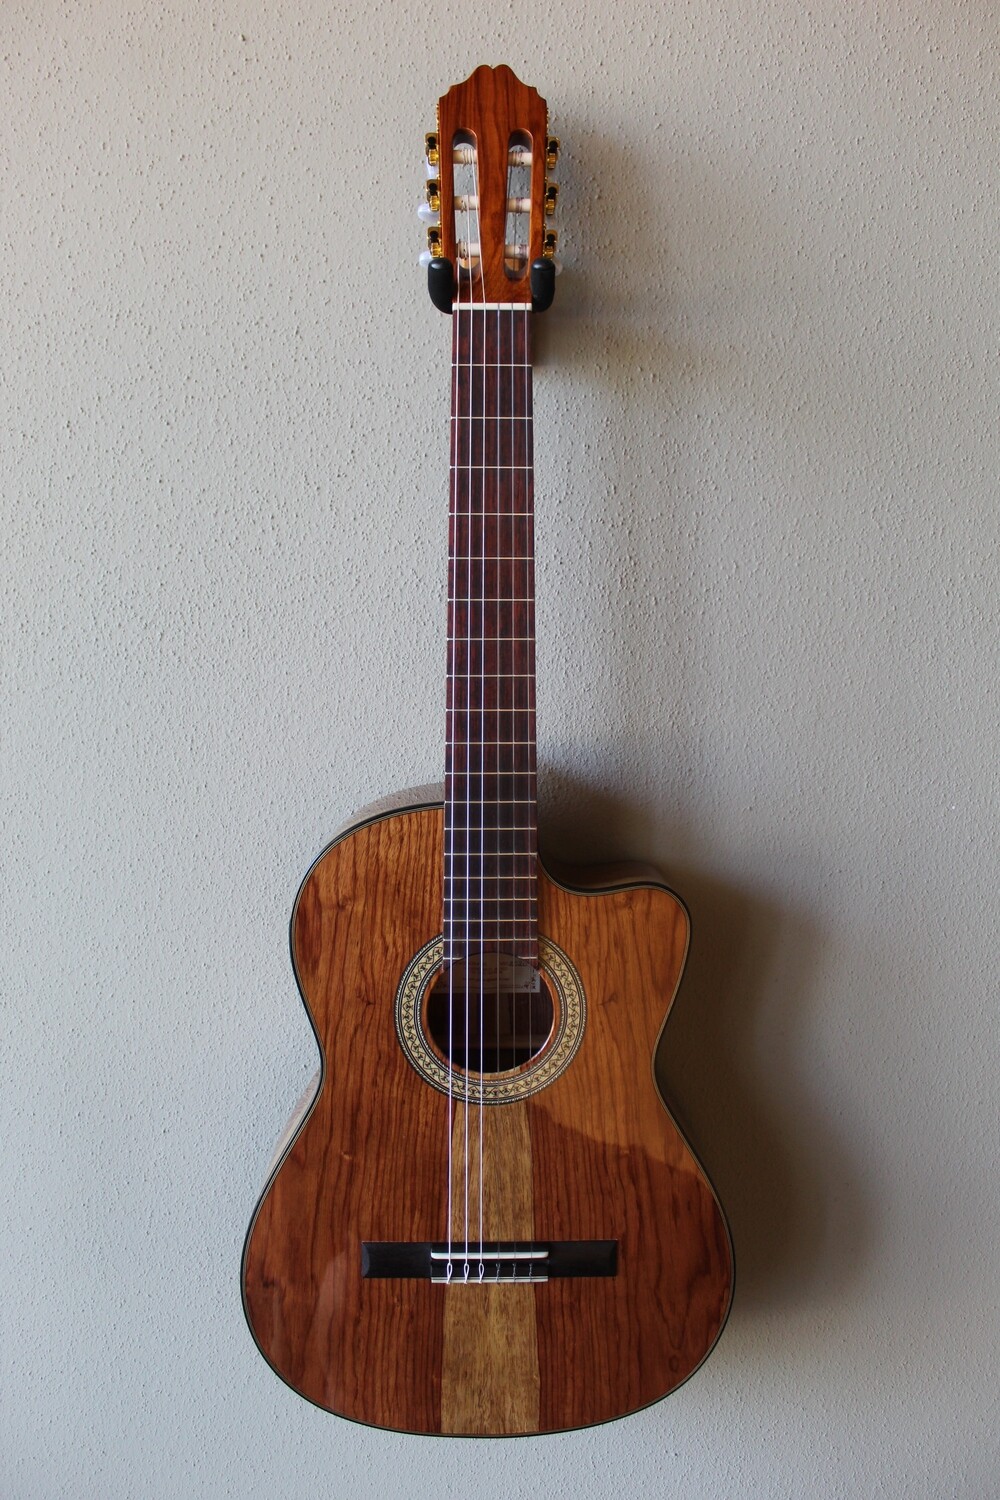 Francisco Navarro Jr. Premium Wood Tesoro Model Classical Guitar with Cutaway